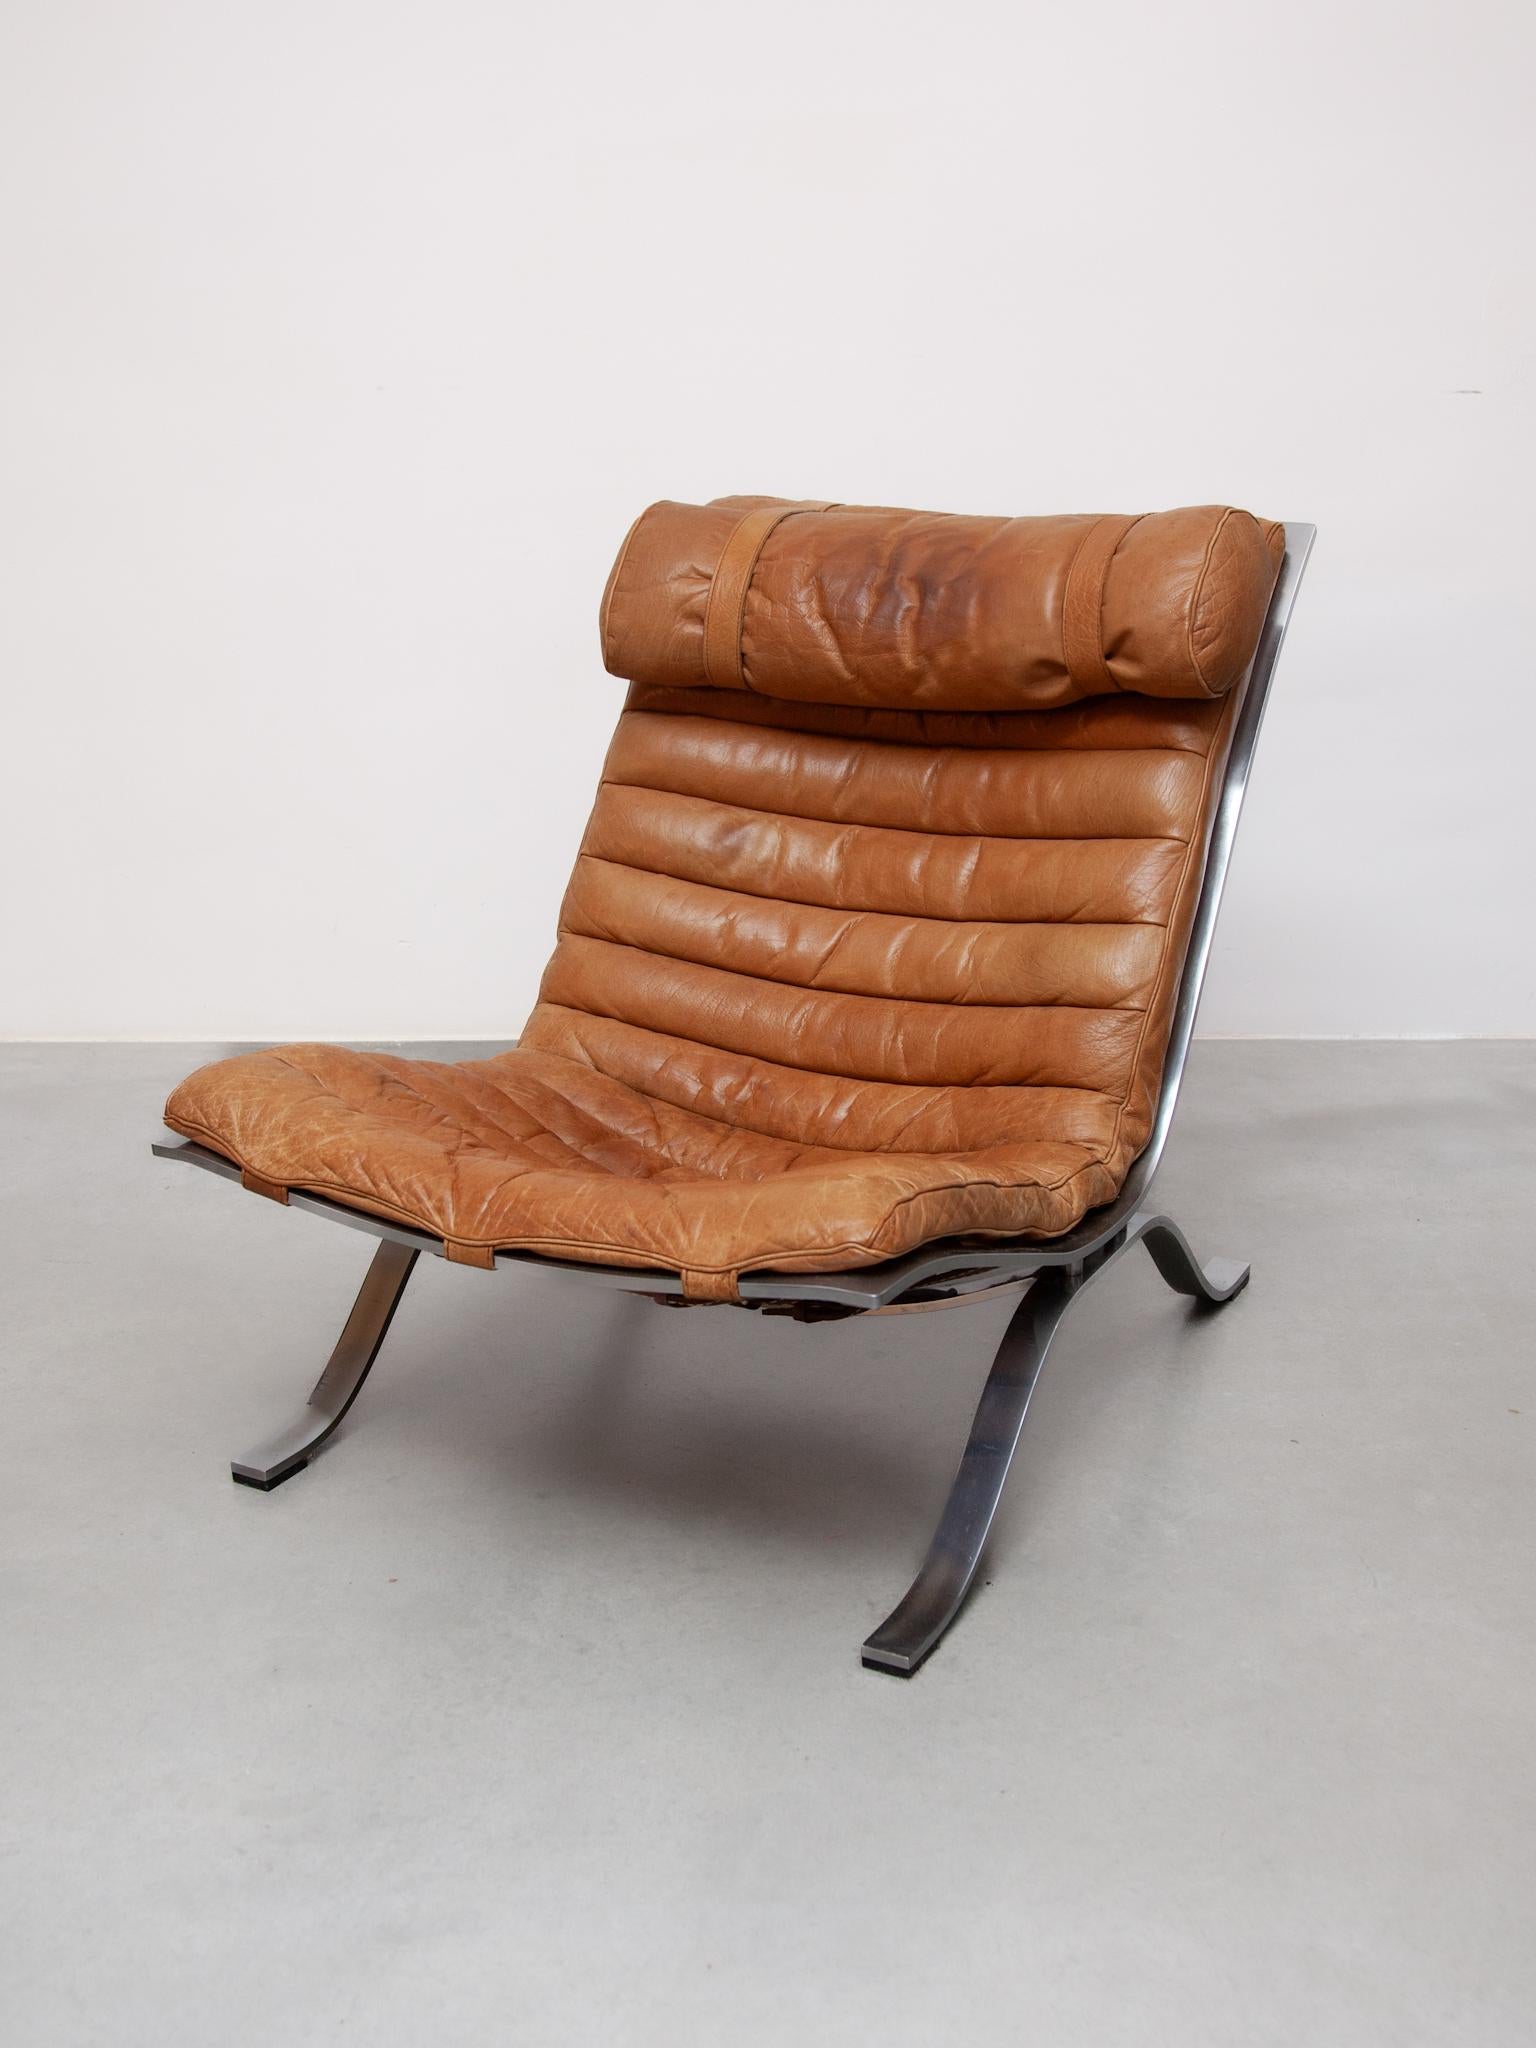 Un magnifique fauteuil de salon conçu dans les années 60 par Arne Norell pour Norell Mobel. Il s'agit d'une combinaison classique et frappante de matériaux, le cadre est constitué de deux courbes d'acier chromé. Le cuir associé à l'acier chromé crée